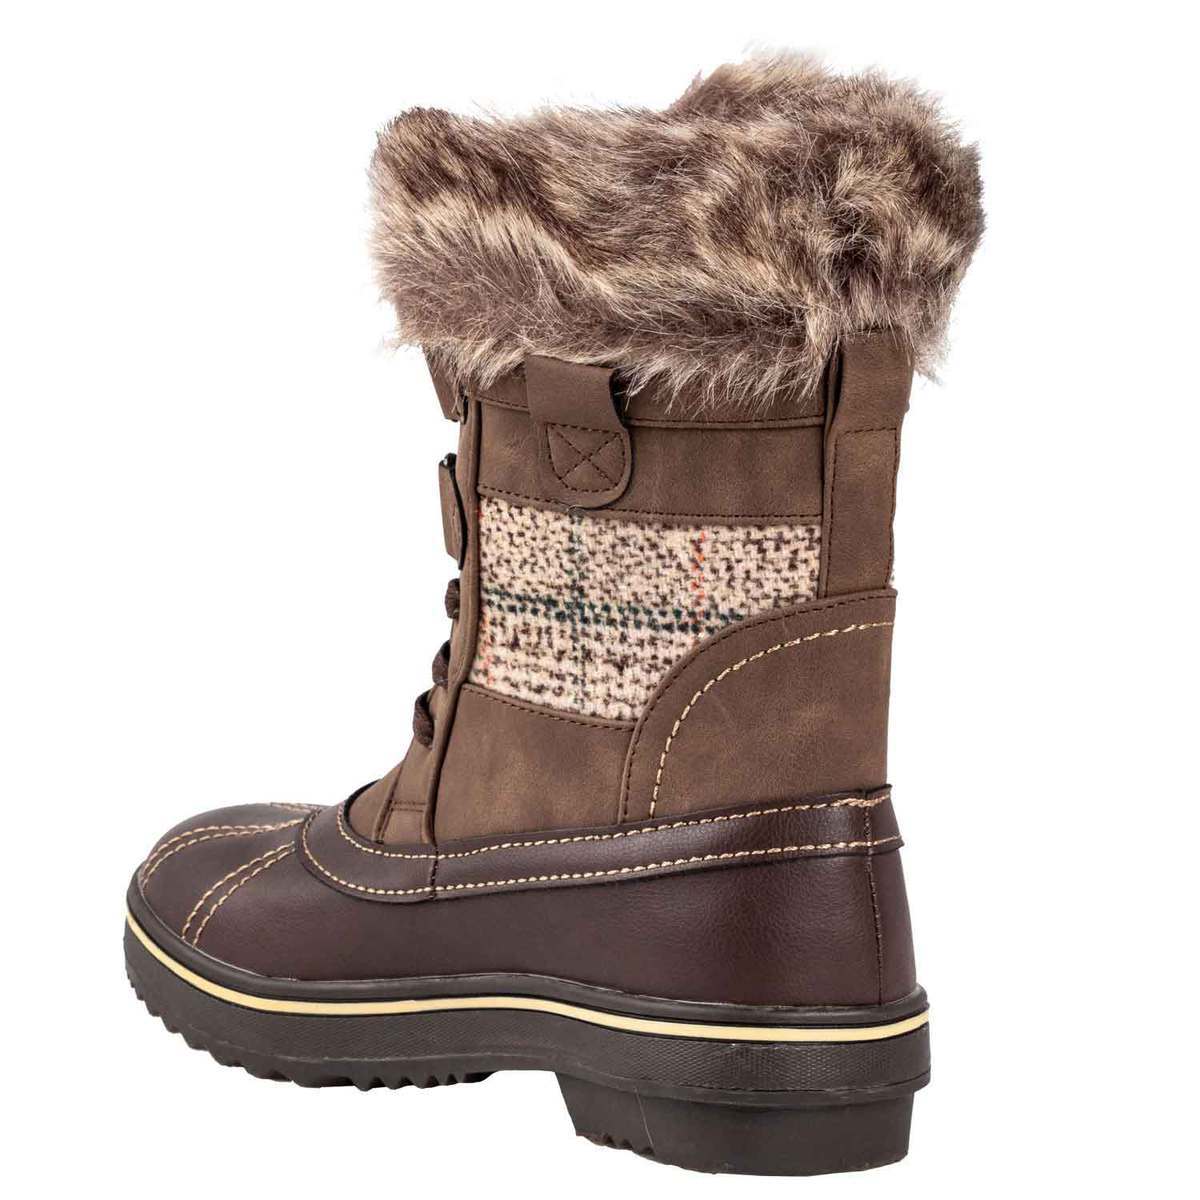 Northside Women's Brookelle Winter Boots - Dark Brown - Size 8 - Dark ...